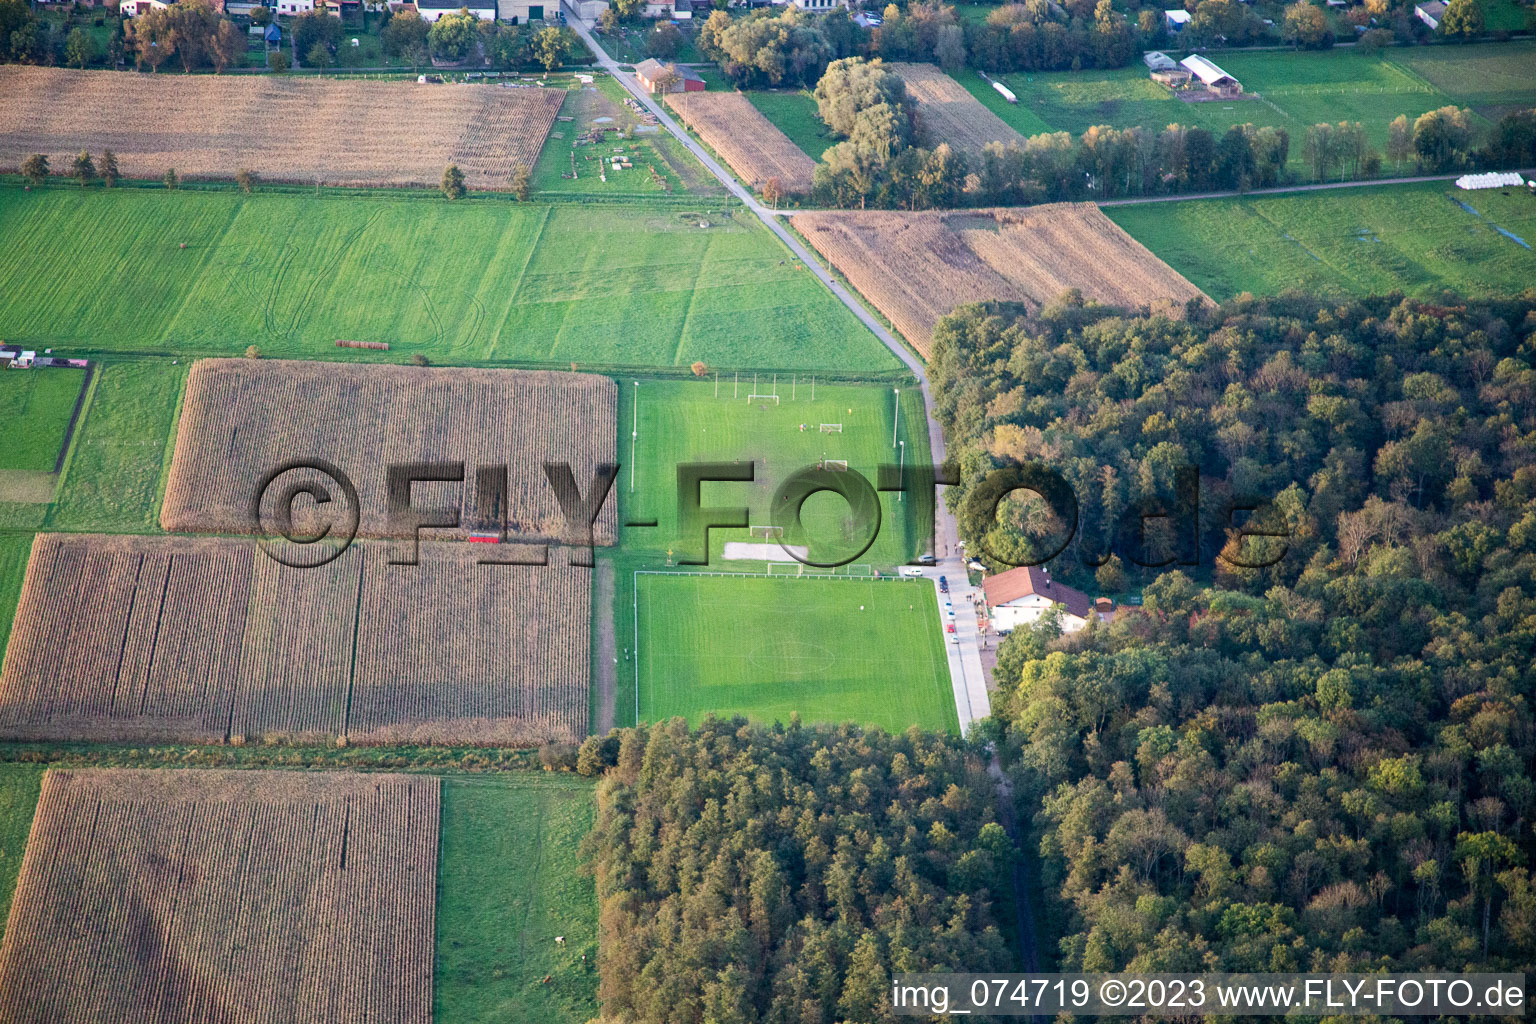 Vue aérienne de Terrain de football à Freckenfeld dans le département Rhénanie-Palatinat, Allemagne